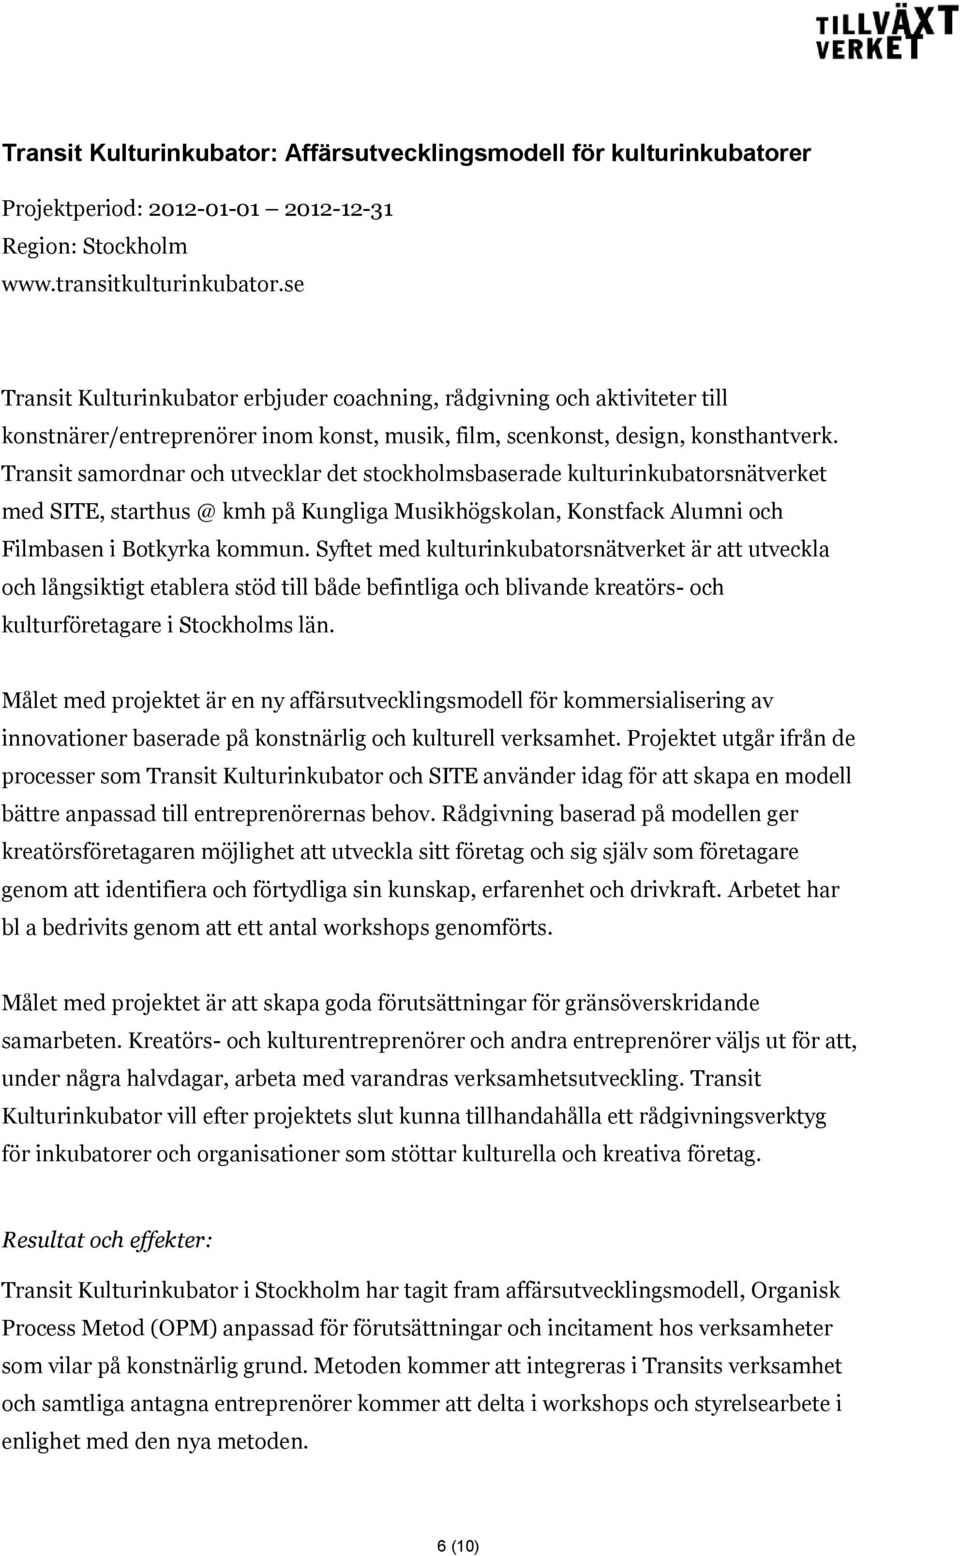 Transit samordnar och utvecklar det stockholmsbaserade kulturinkubatorsnätverket med SITE, starthus @ kmh på Kungliga Musikhögskolan, Konstfack Alumni och Filmbasen i Botkyrka kommun.